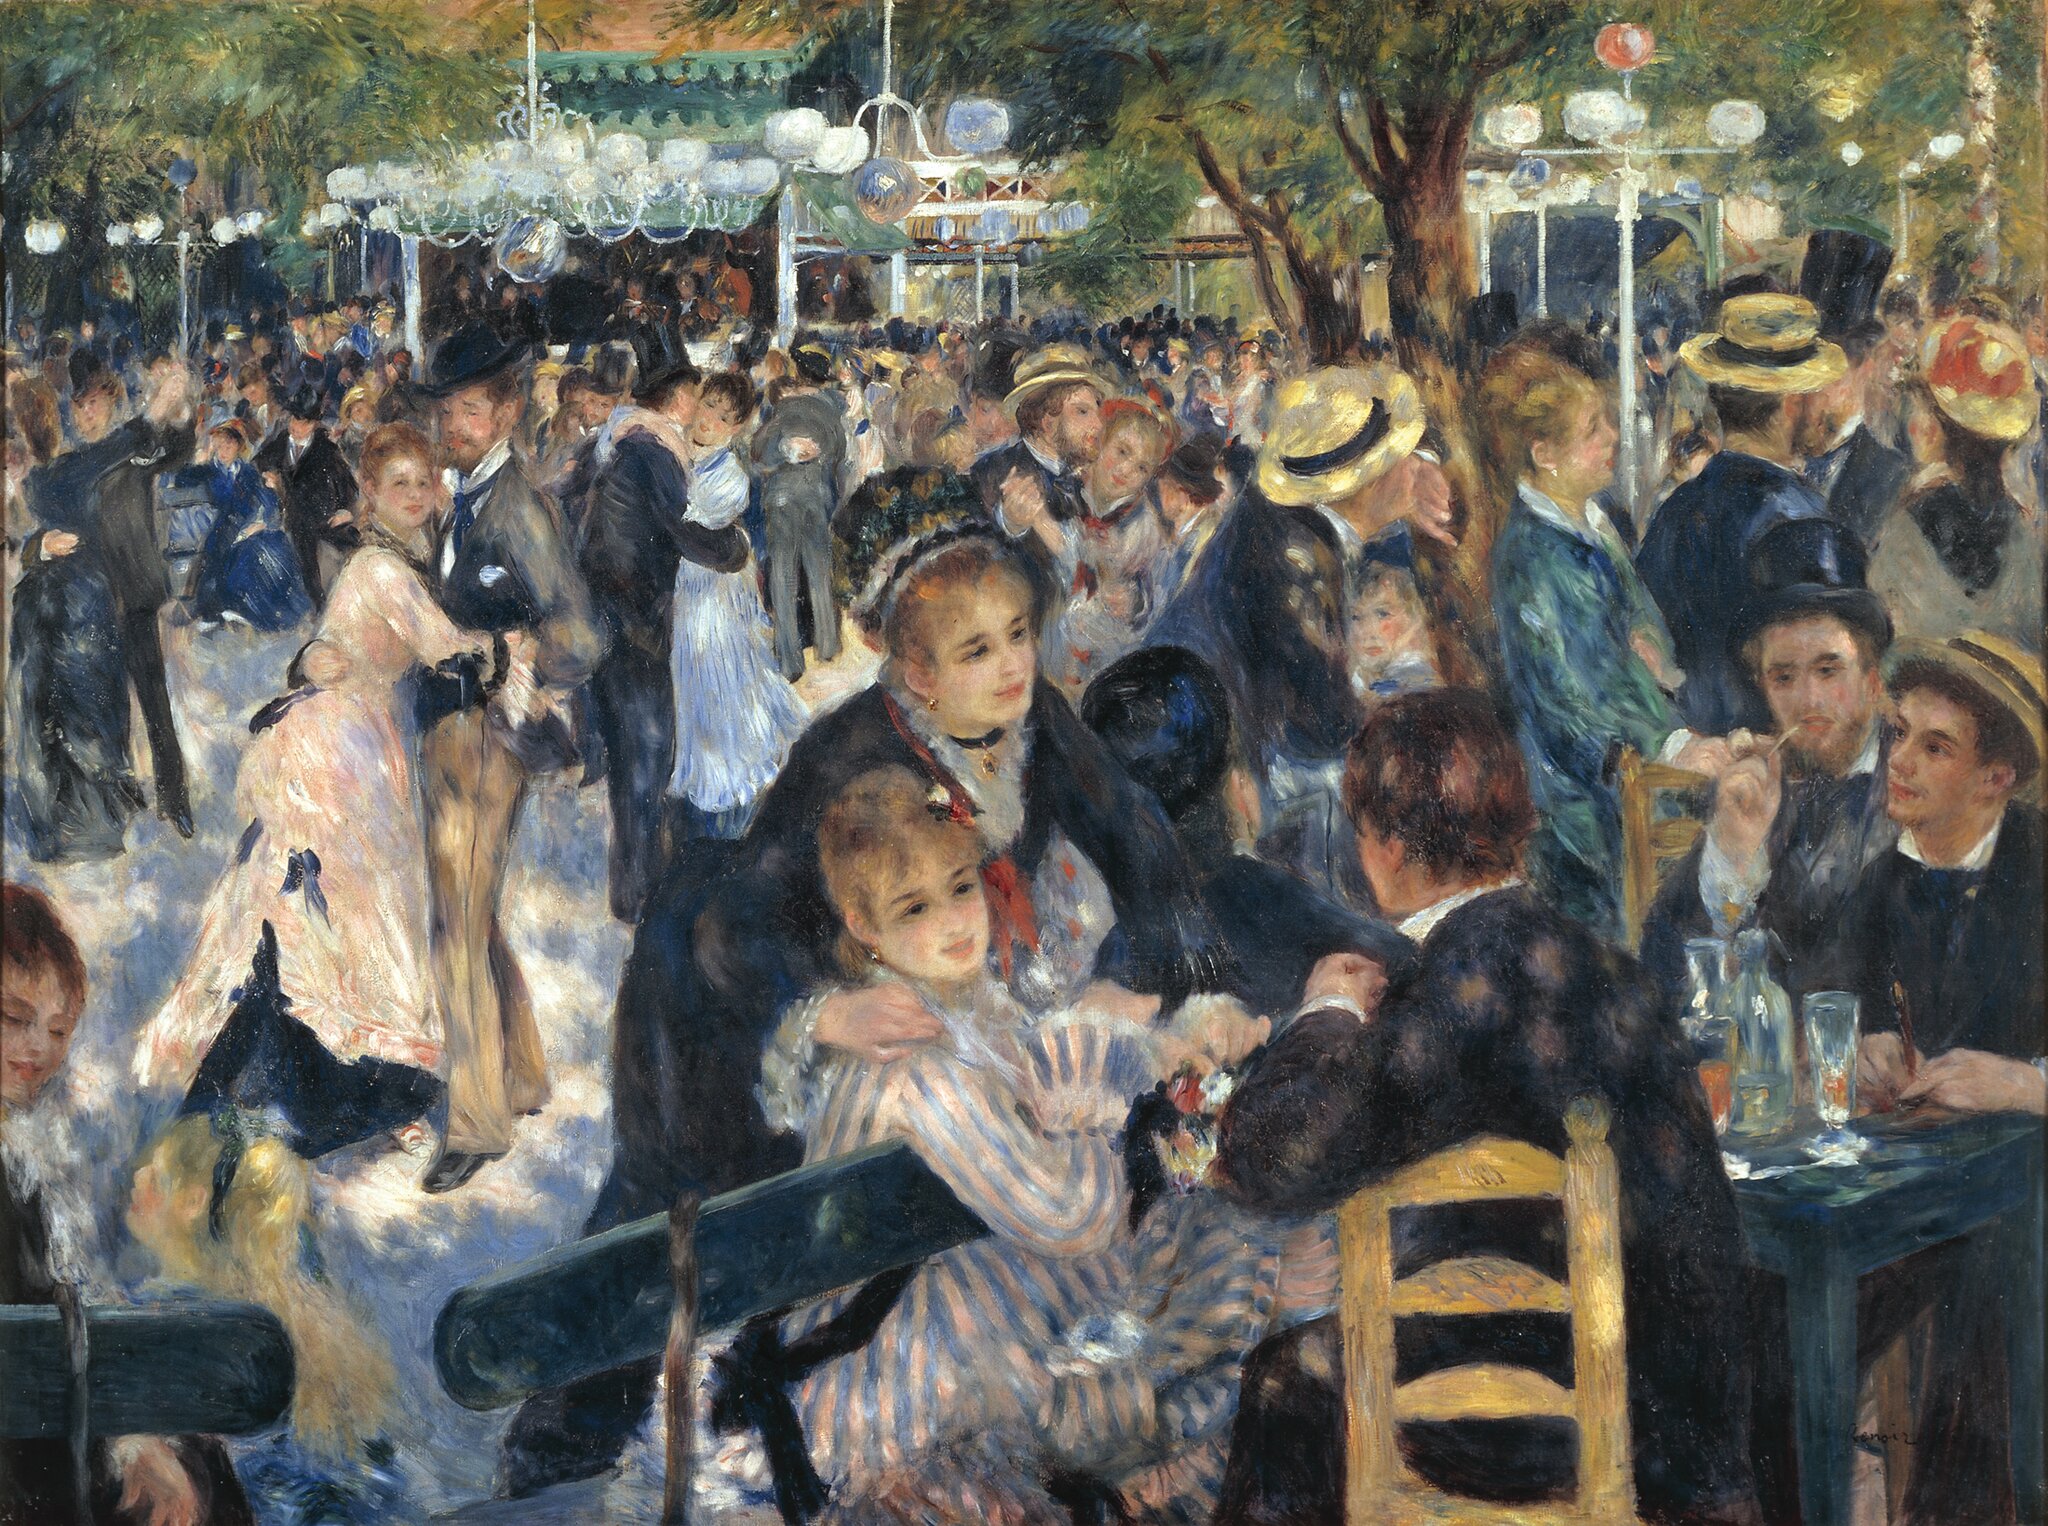 Okładka - izmy przełomu wieków Źródło: Auguste Renoir, 1876, olej na płótnie, domena publiczna.